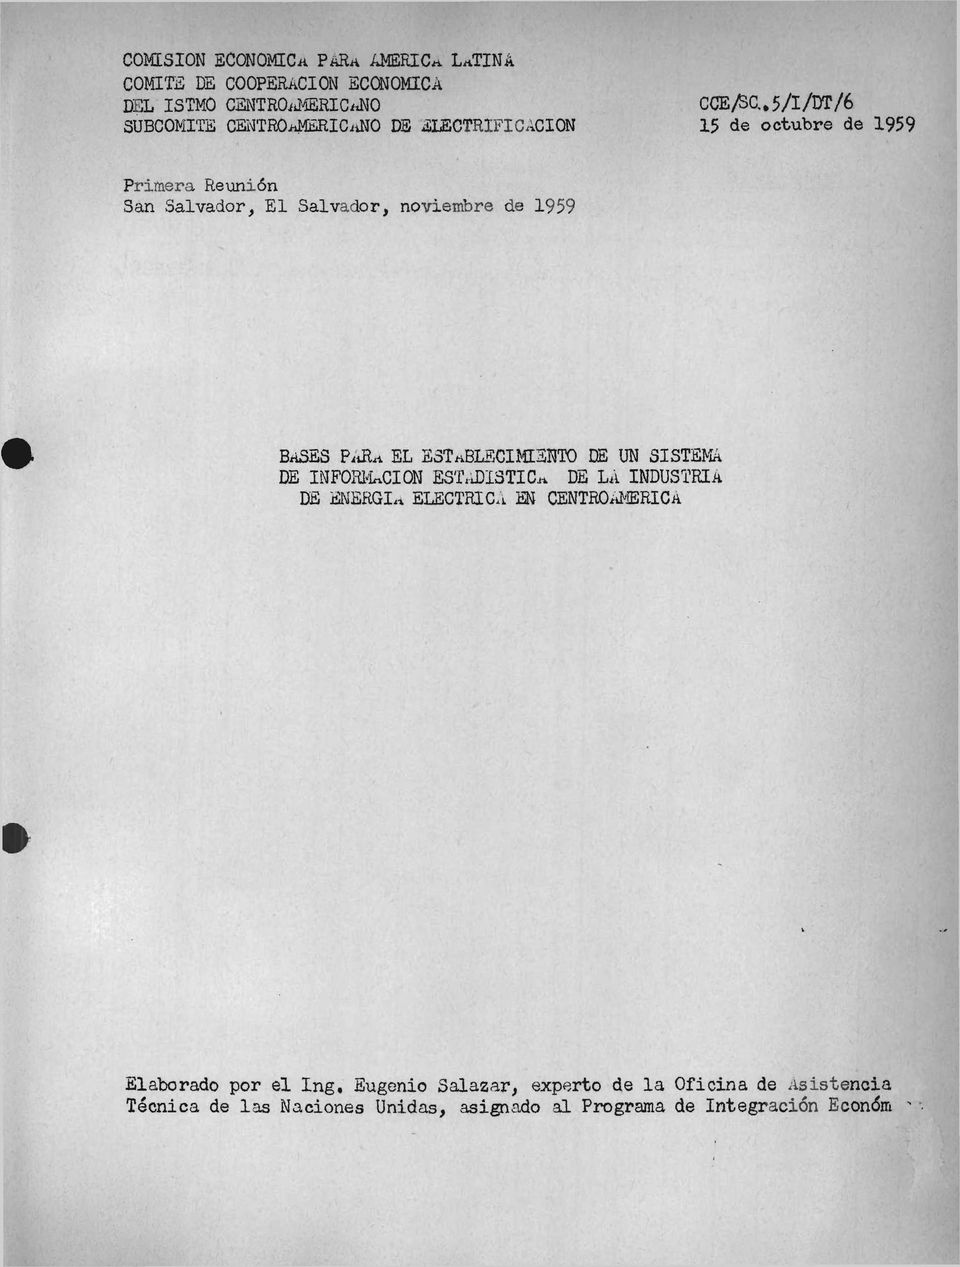 *5/I/DT/6 15 de octubre de 1959 Primera Reunión San Salvador, El Salvador, noviembre de 1959 bases PaRa e l esta blecim ien to de